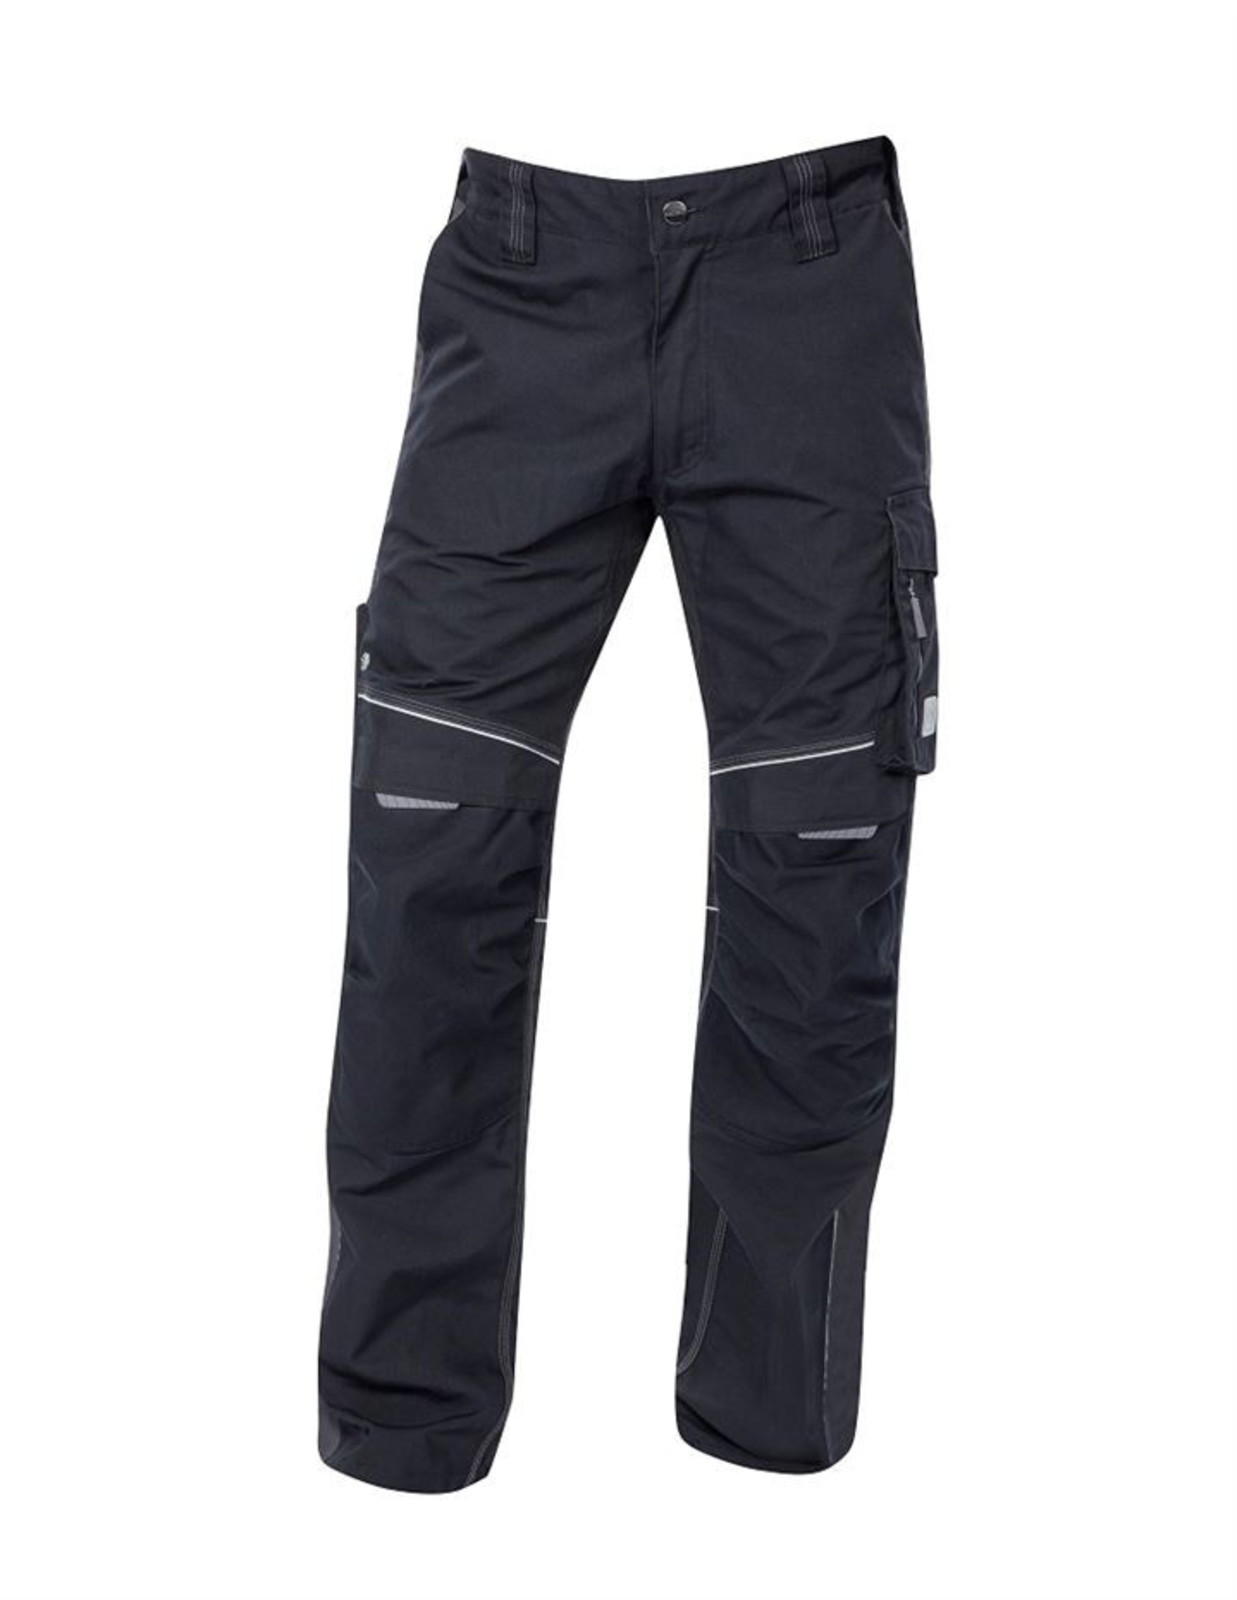 Pánske montérkové nohavice Ardon Urban+ - veľkosť: 52, farba: čierna/sivá